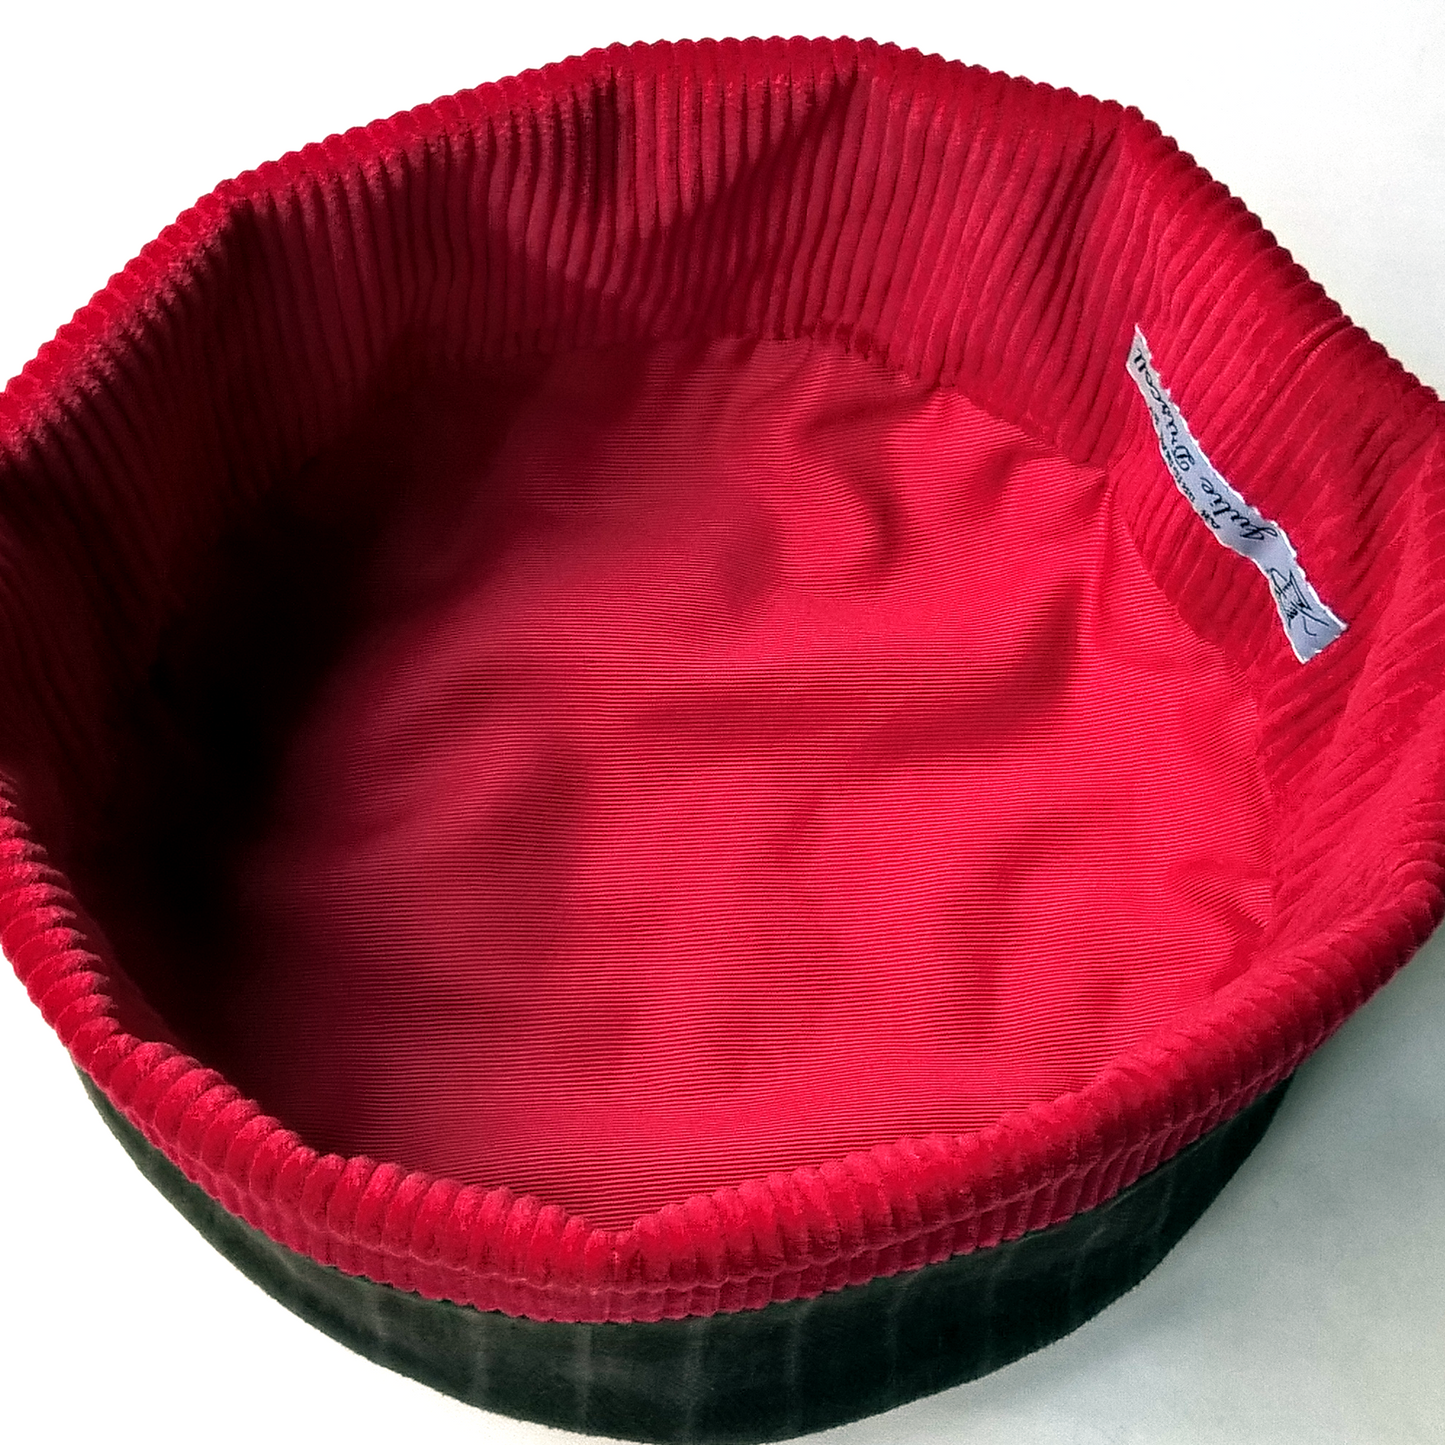 Red inner lining of smoking cap